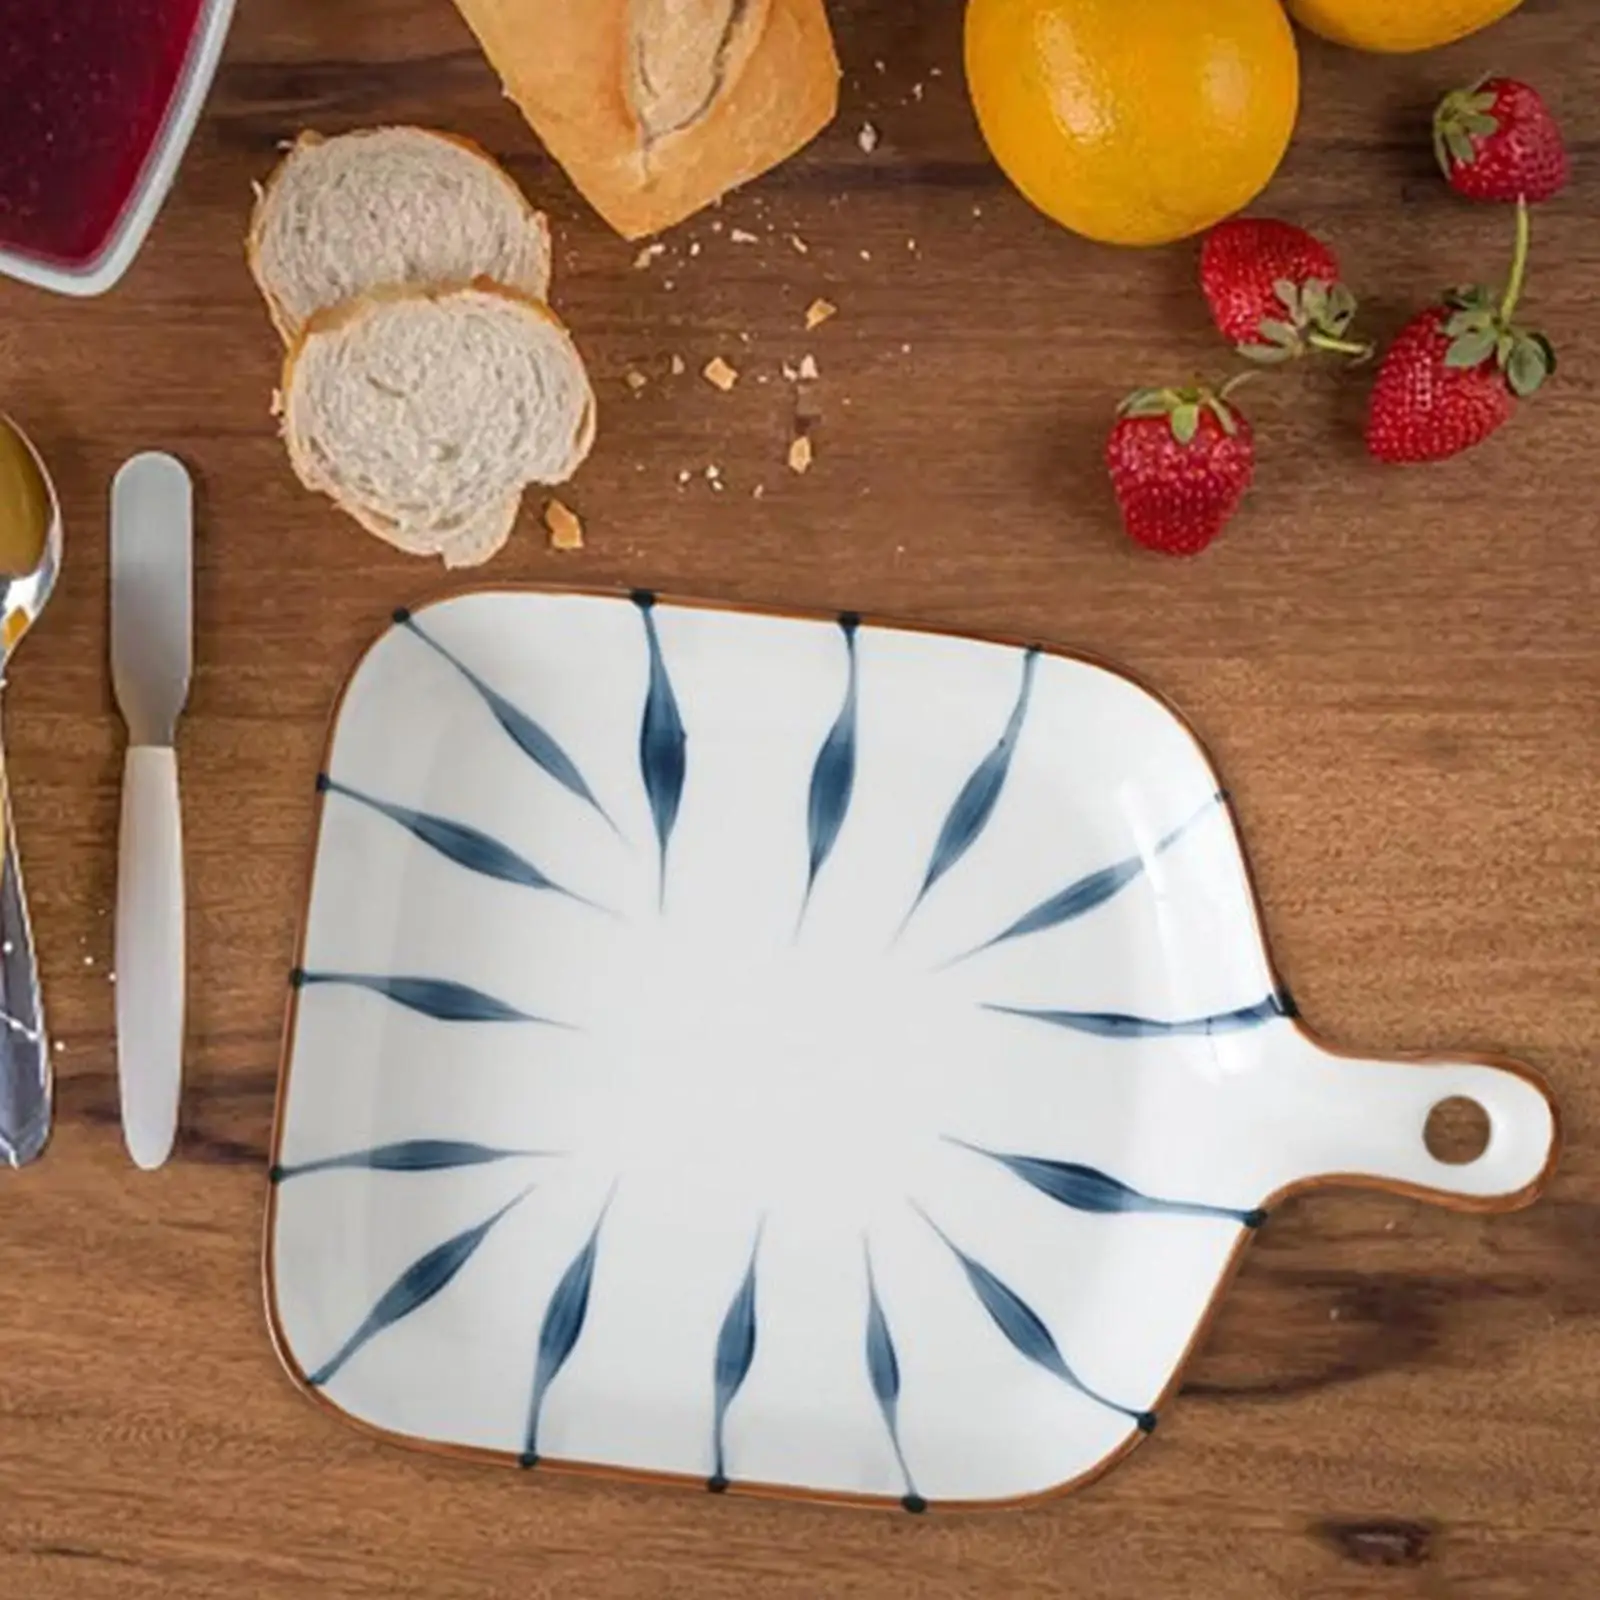 Porcelain Food Serving Plate with Single Handle Dinner Plates Baking Dish Platter for Dessert Fruit Appetizer Snack Salad